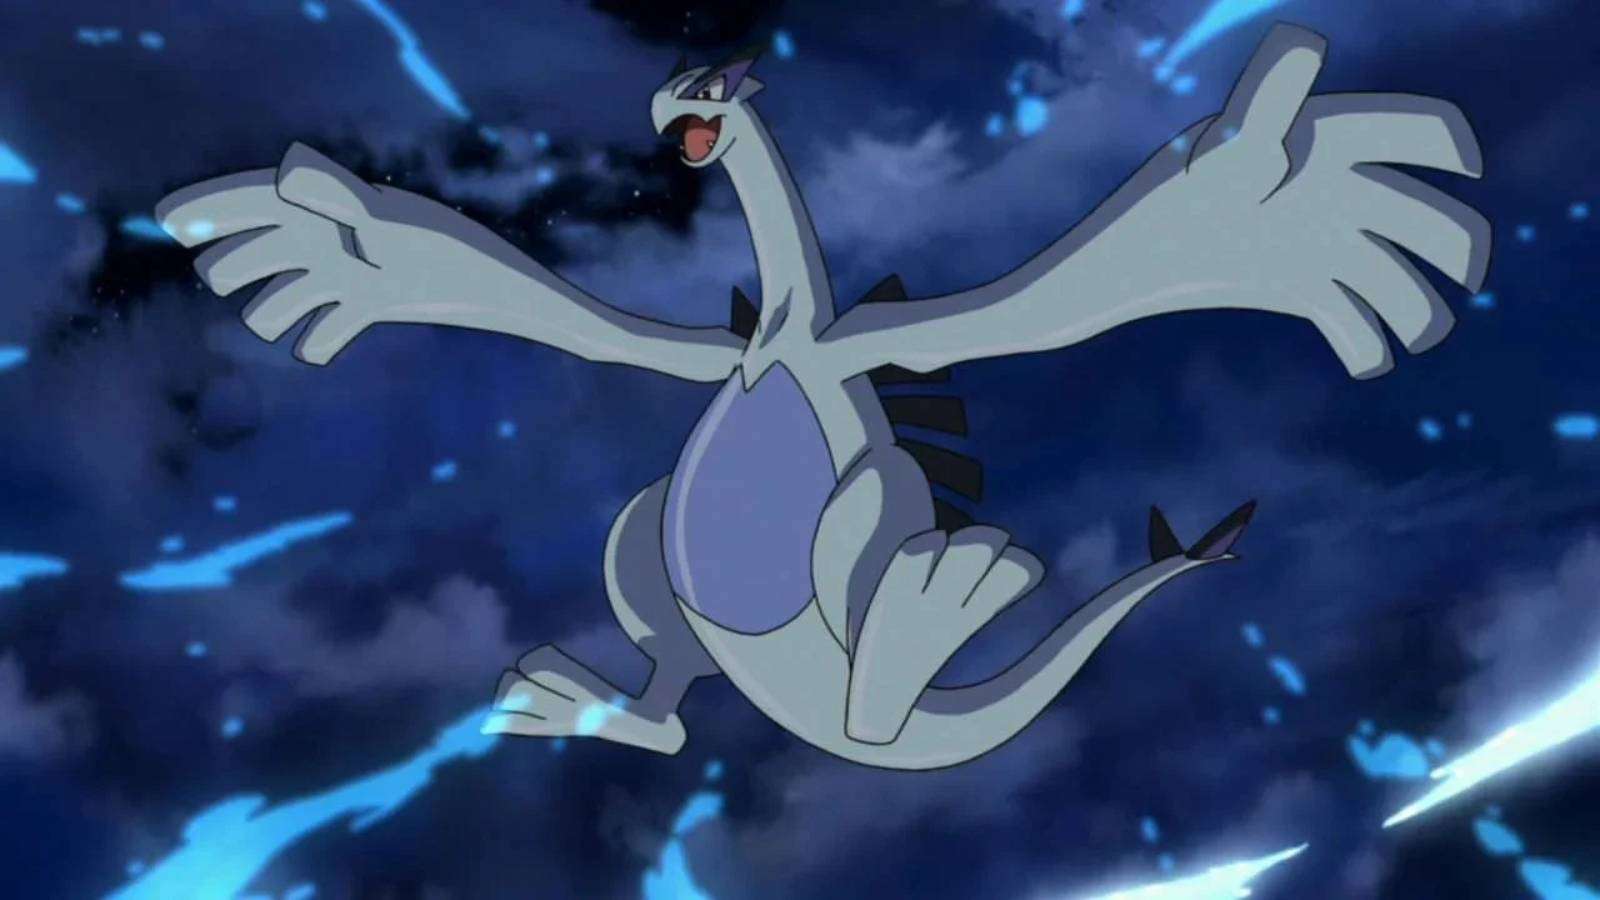 The legendary Pokemon Lugia appears flying, against the dark night sky